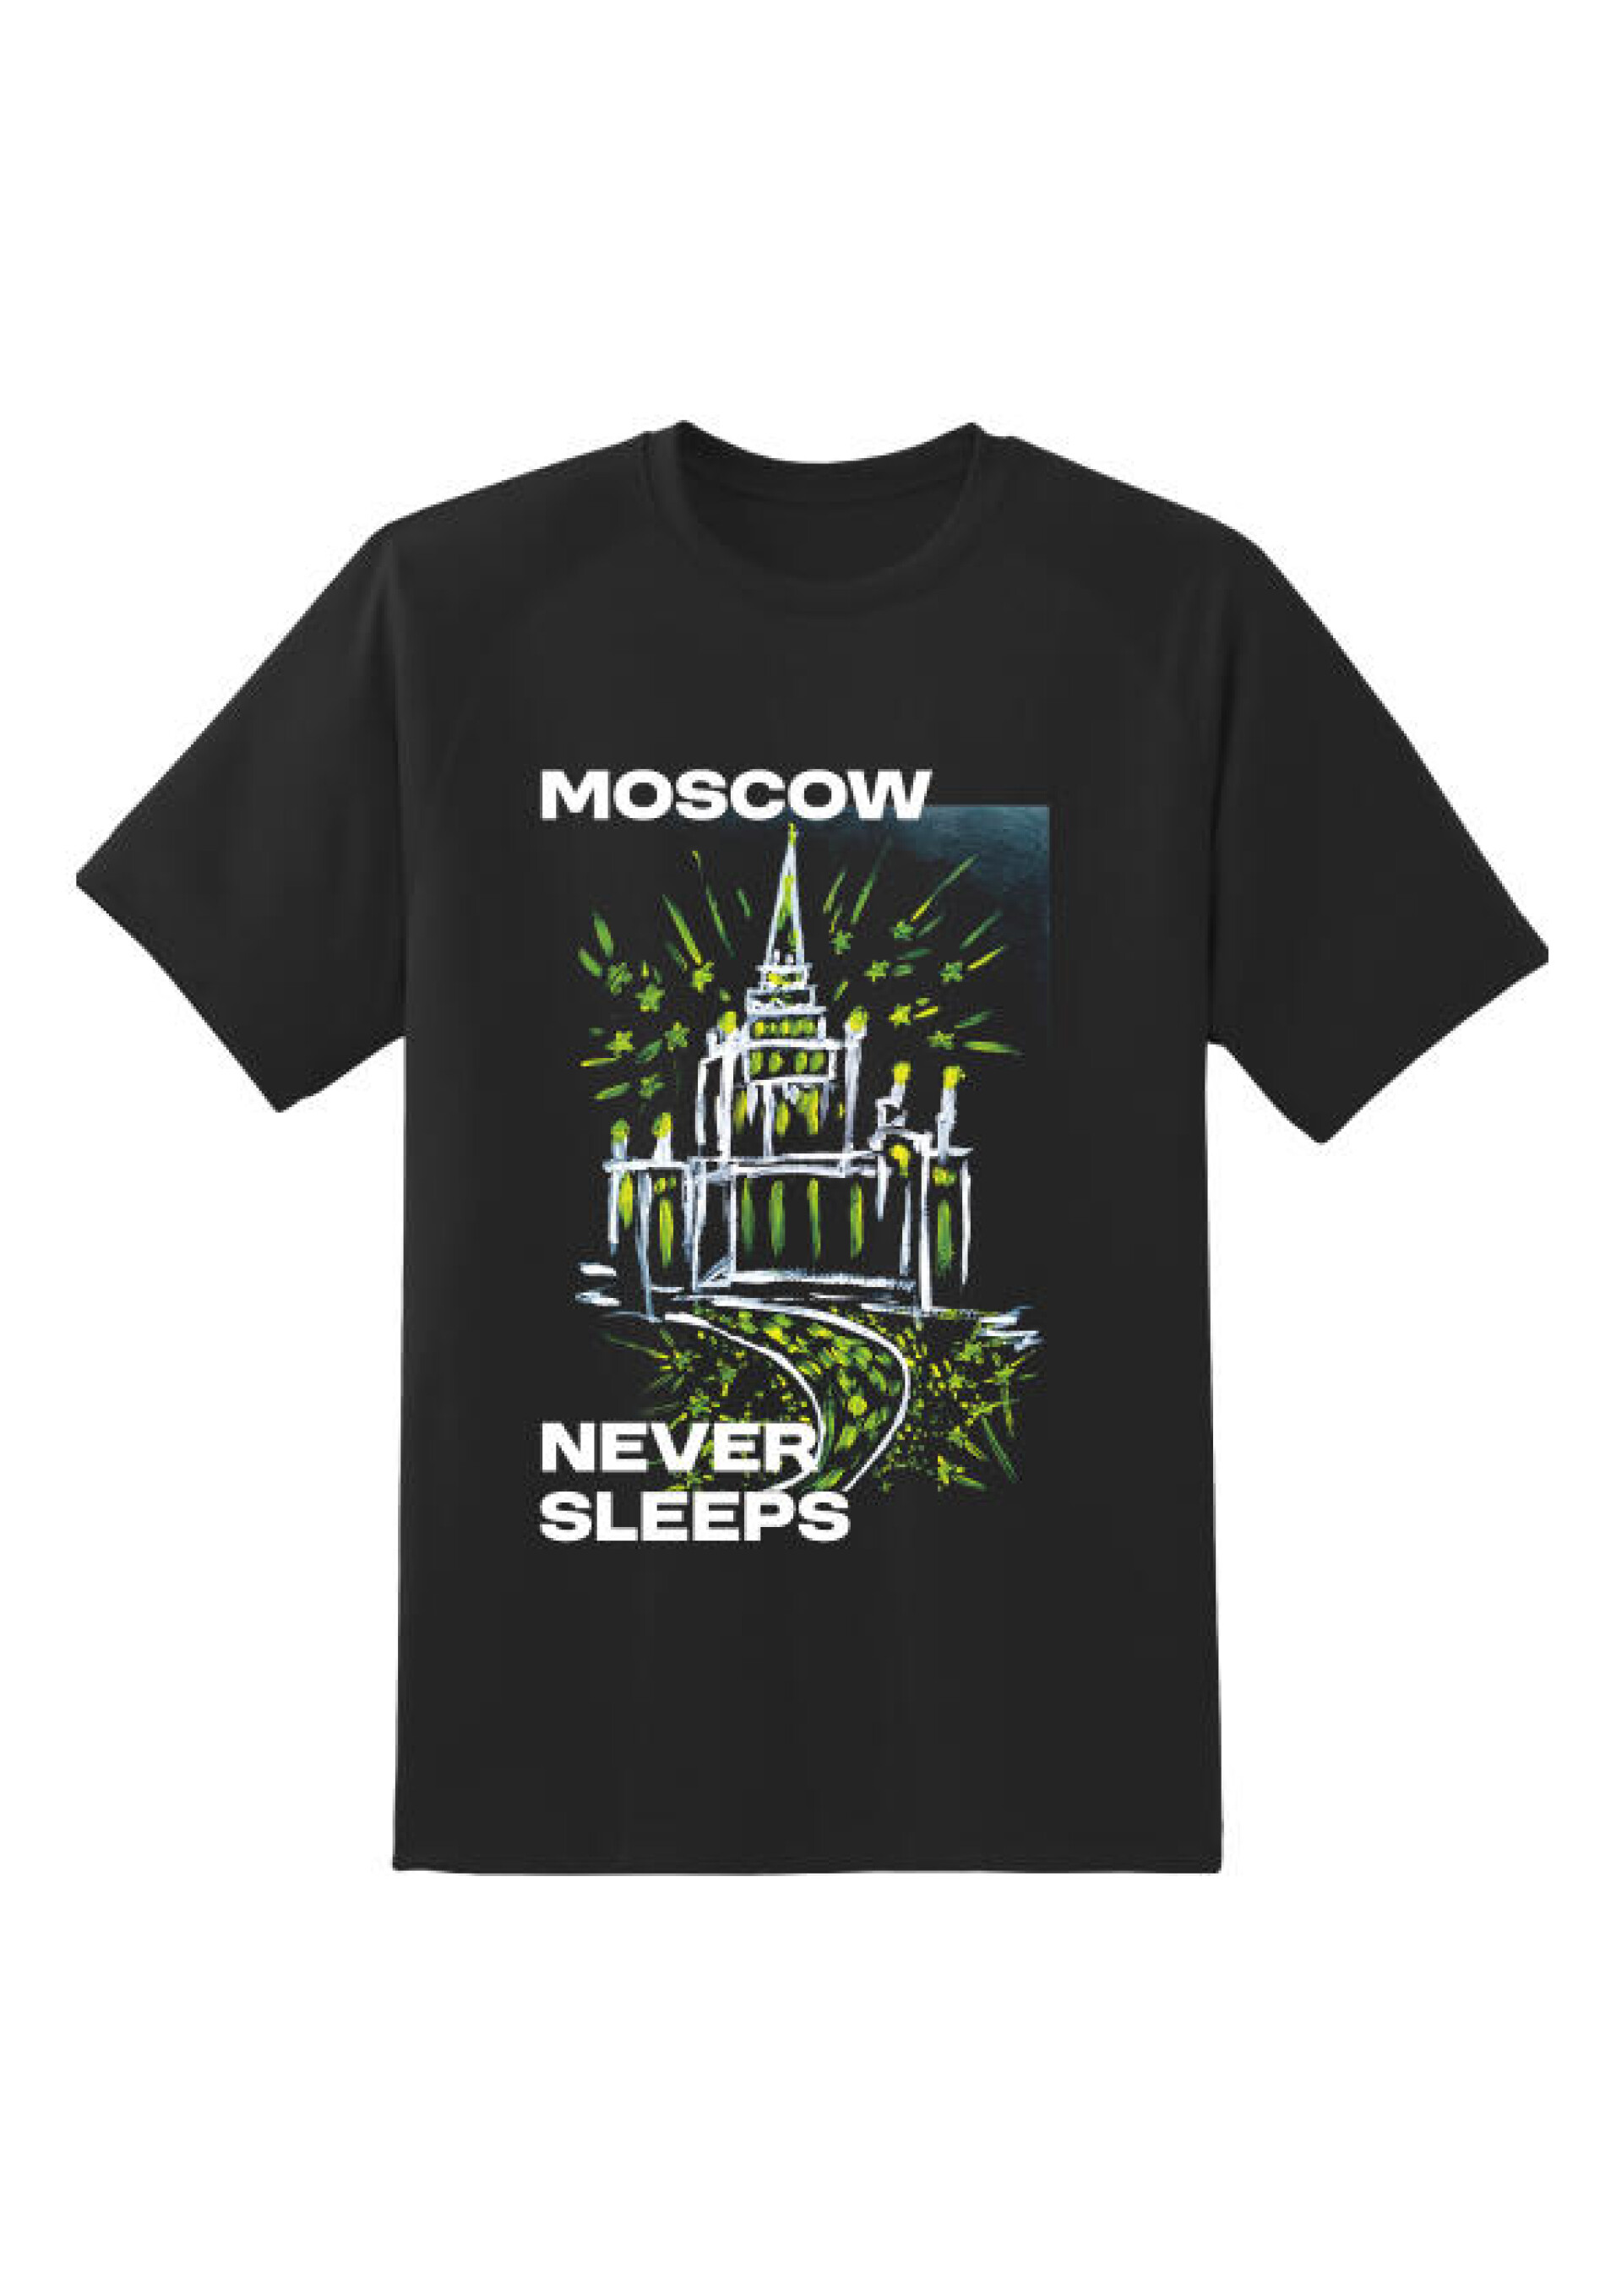 Moscow never sleeps - CO:CREATE